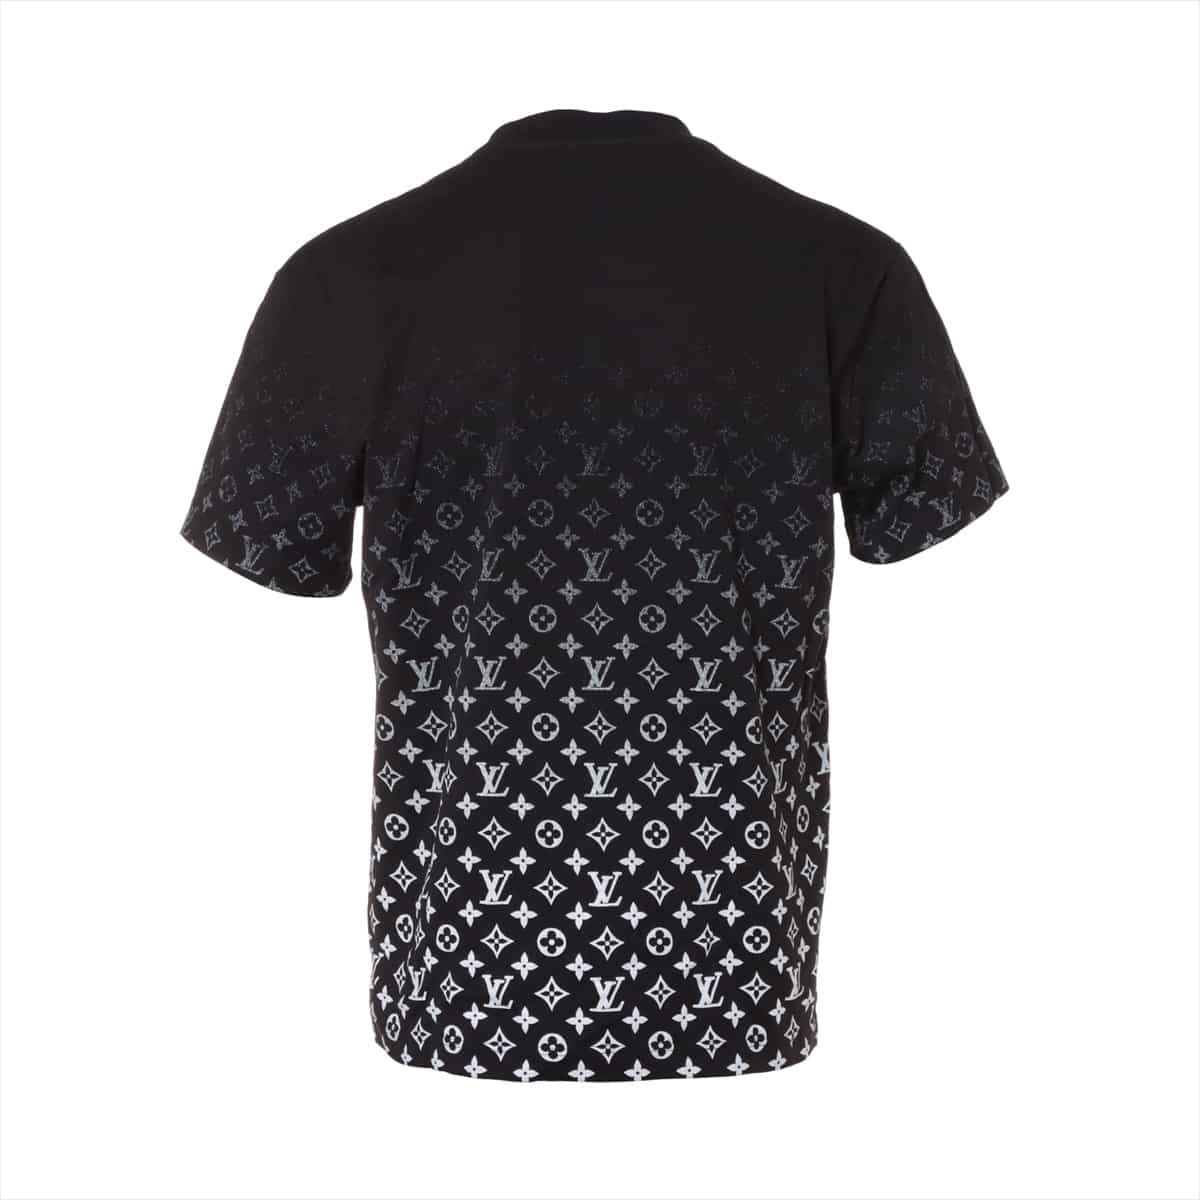 ルイヴィトン 20AW コットン Tシャツ M メンズ ブラック RM202 モノグラムグラディエント